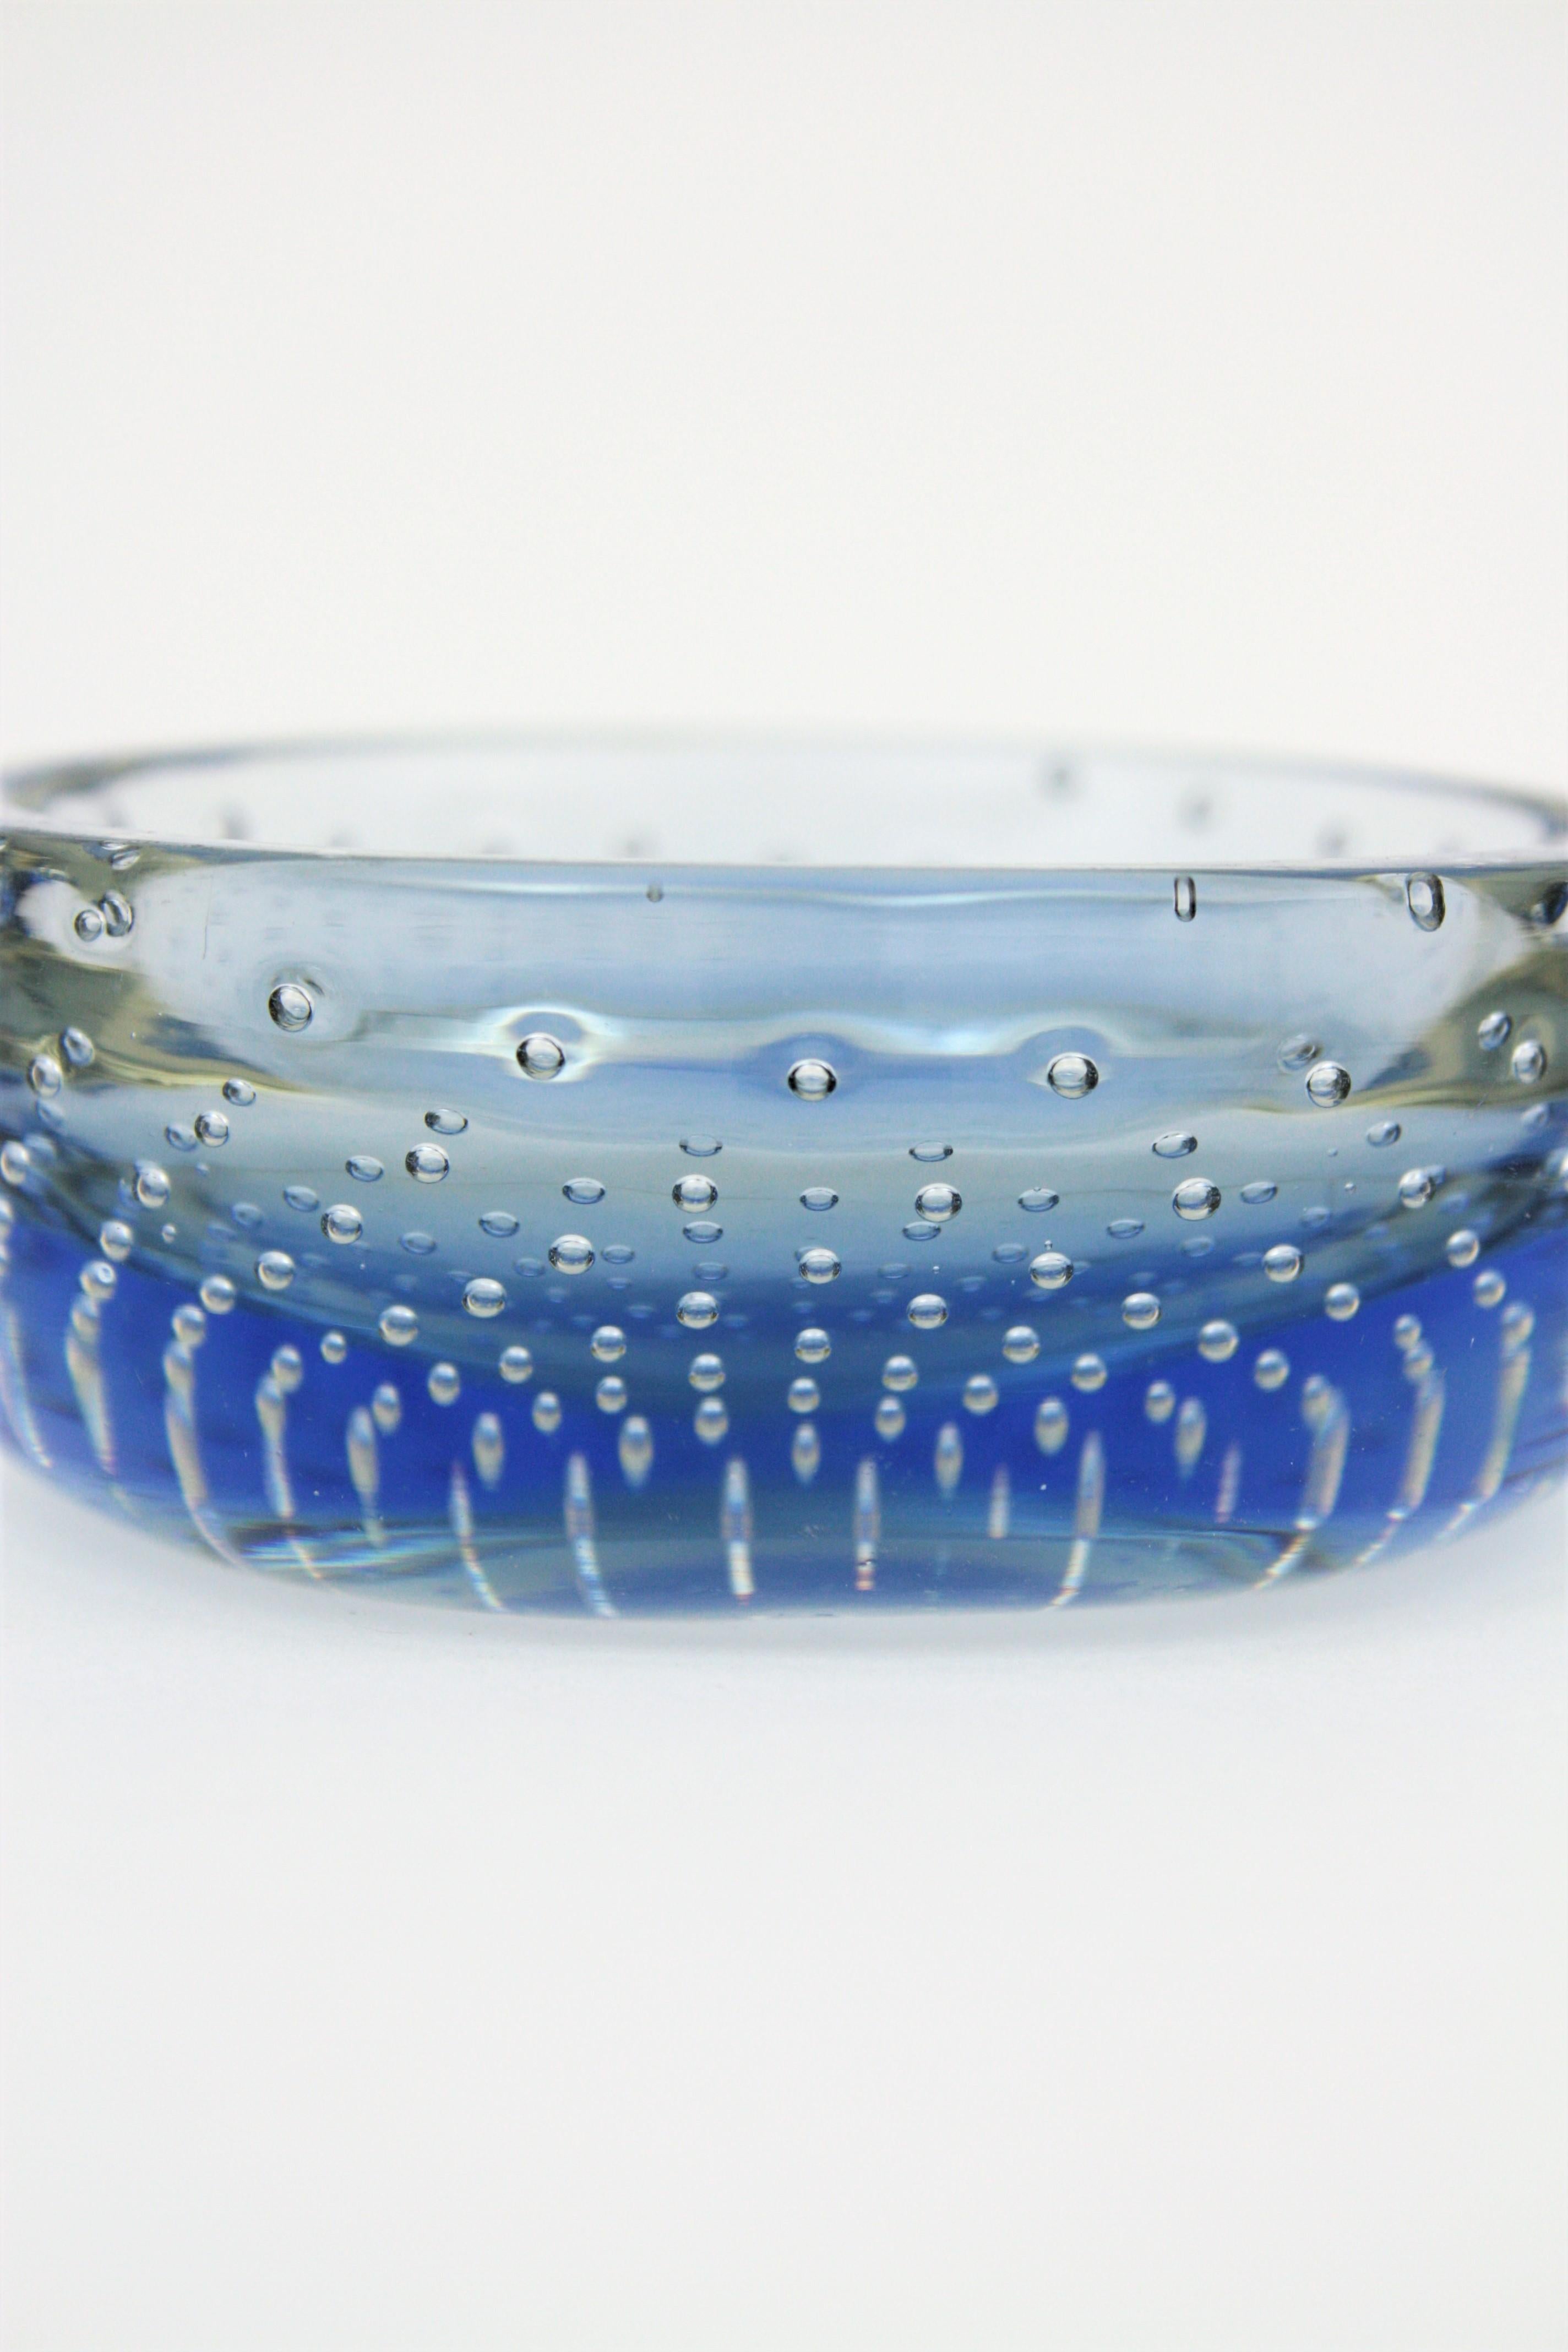 murano blue glass bowl